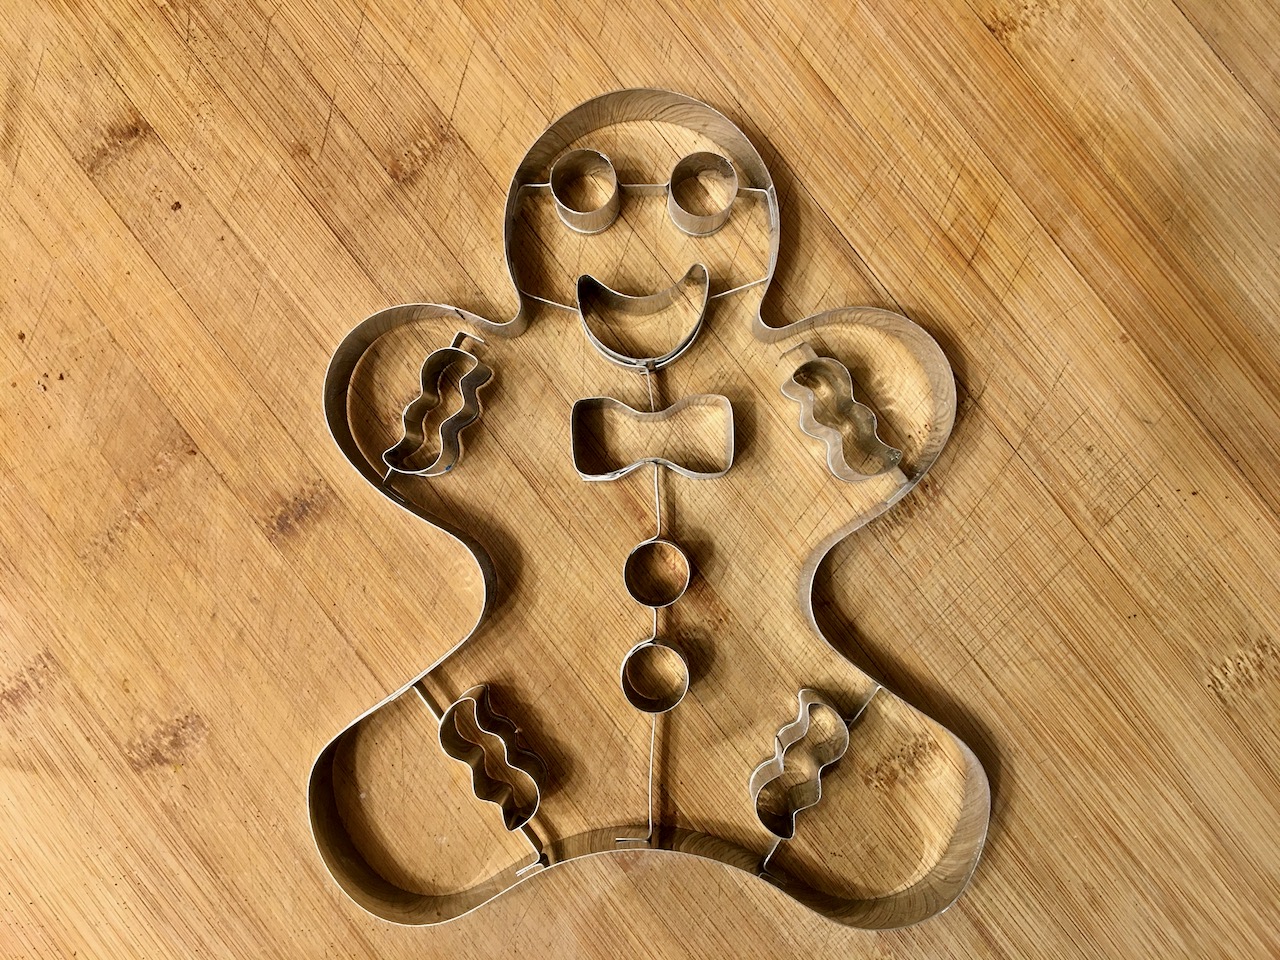 Gewürzmännchen / gingerbread man